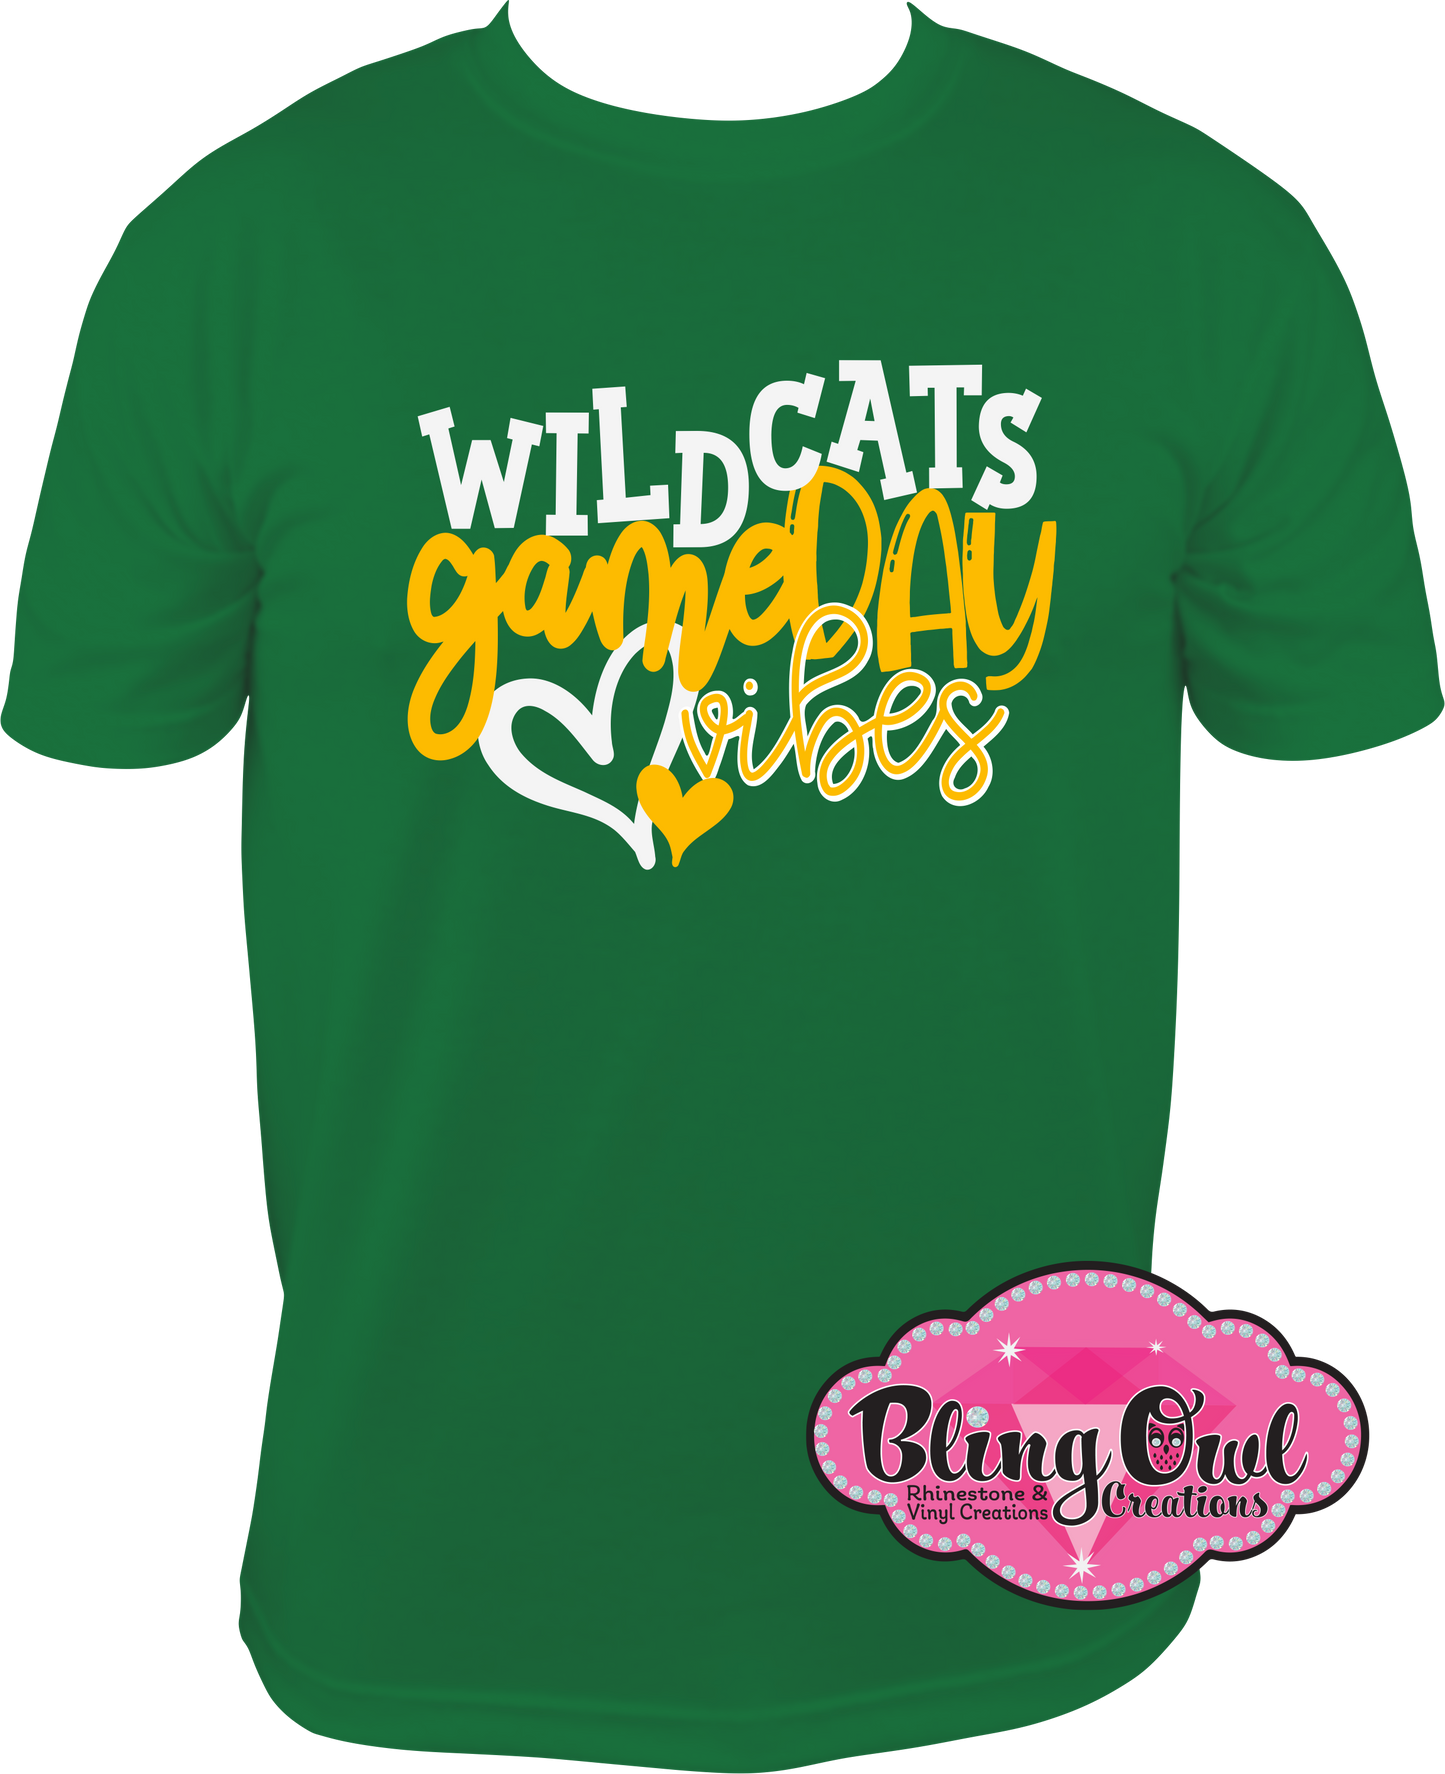 great_bridge wildcats school_spirit_wear vinyl design